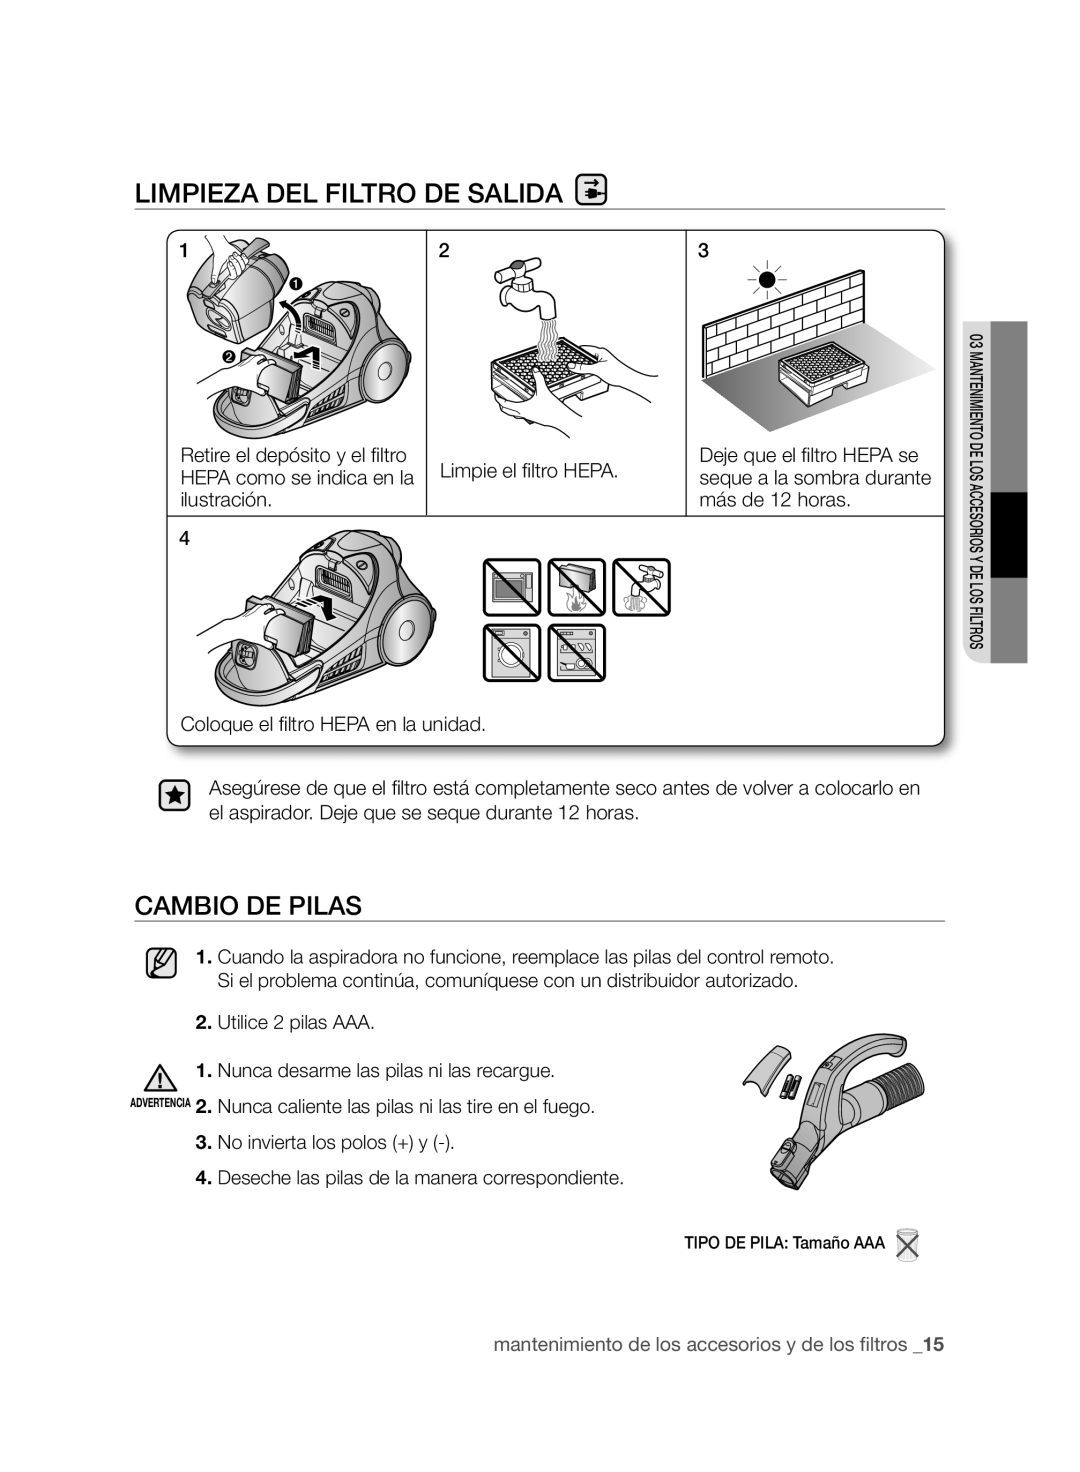 Samsung VCC96P0H1G user manual Limpieza Del Filtro De Salida, Cambio De Pilas 